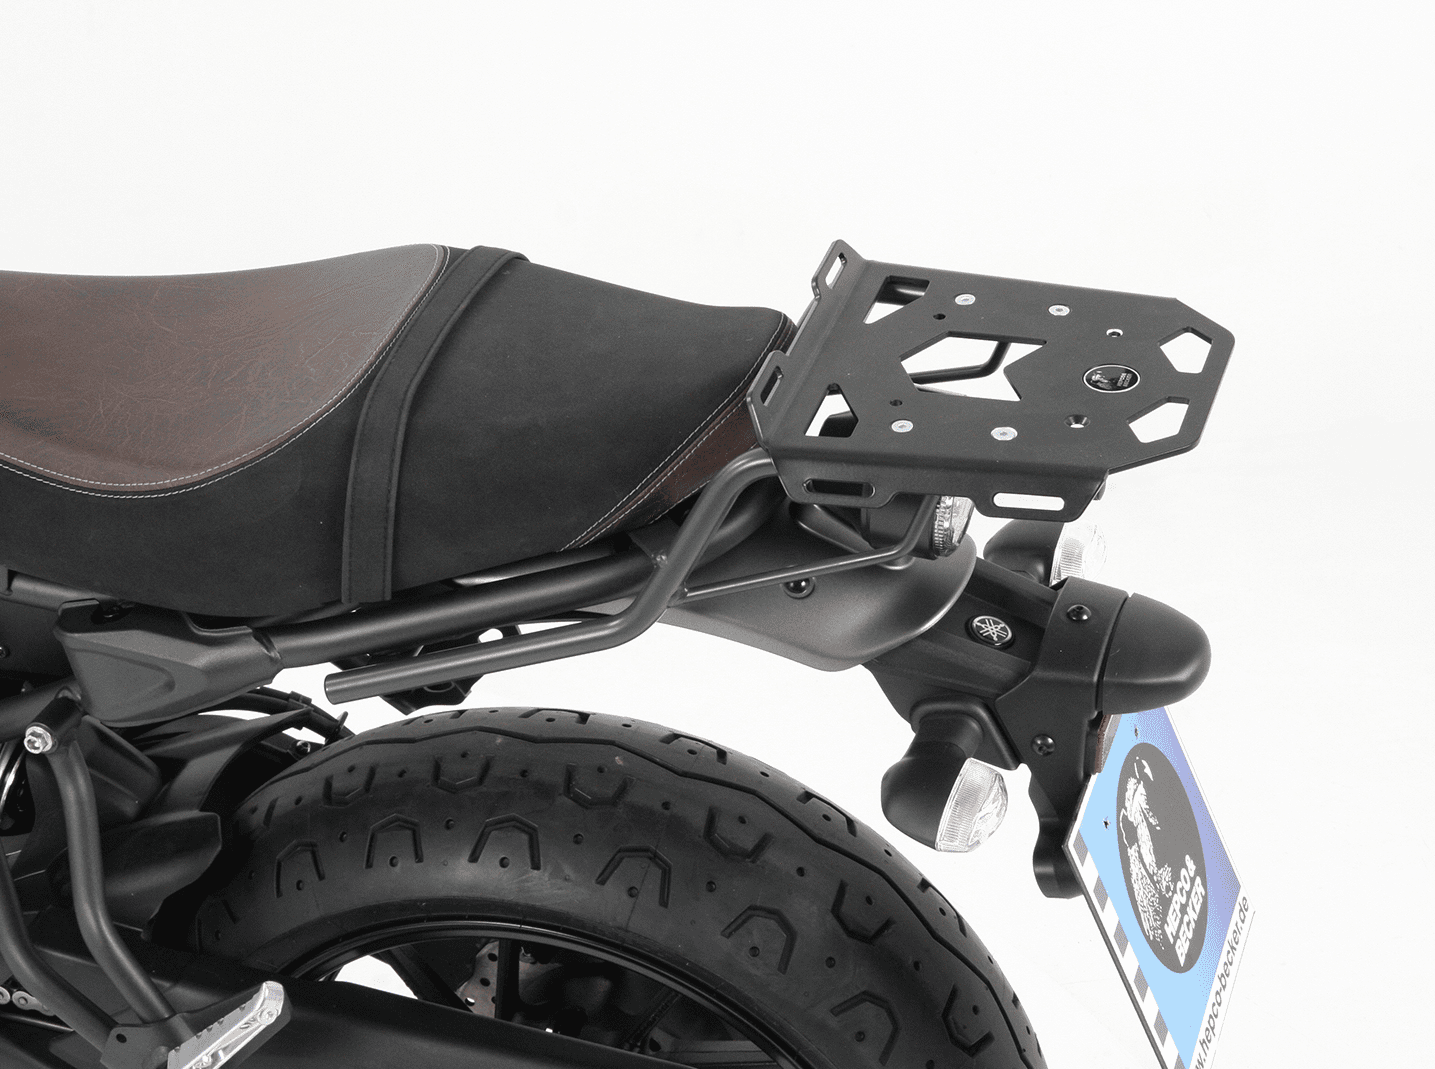 Minirack soft luggage rear rack for Yamaha XSR 700/Xtribute (2016-2021)